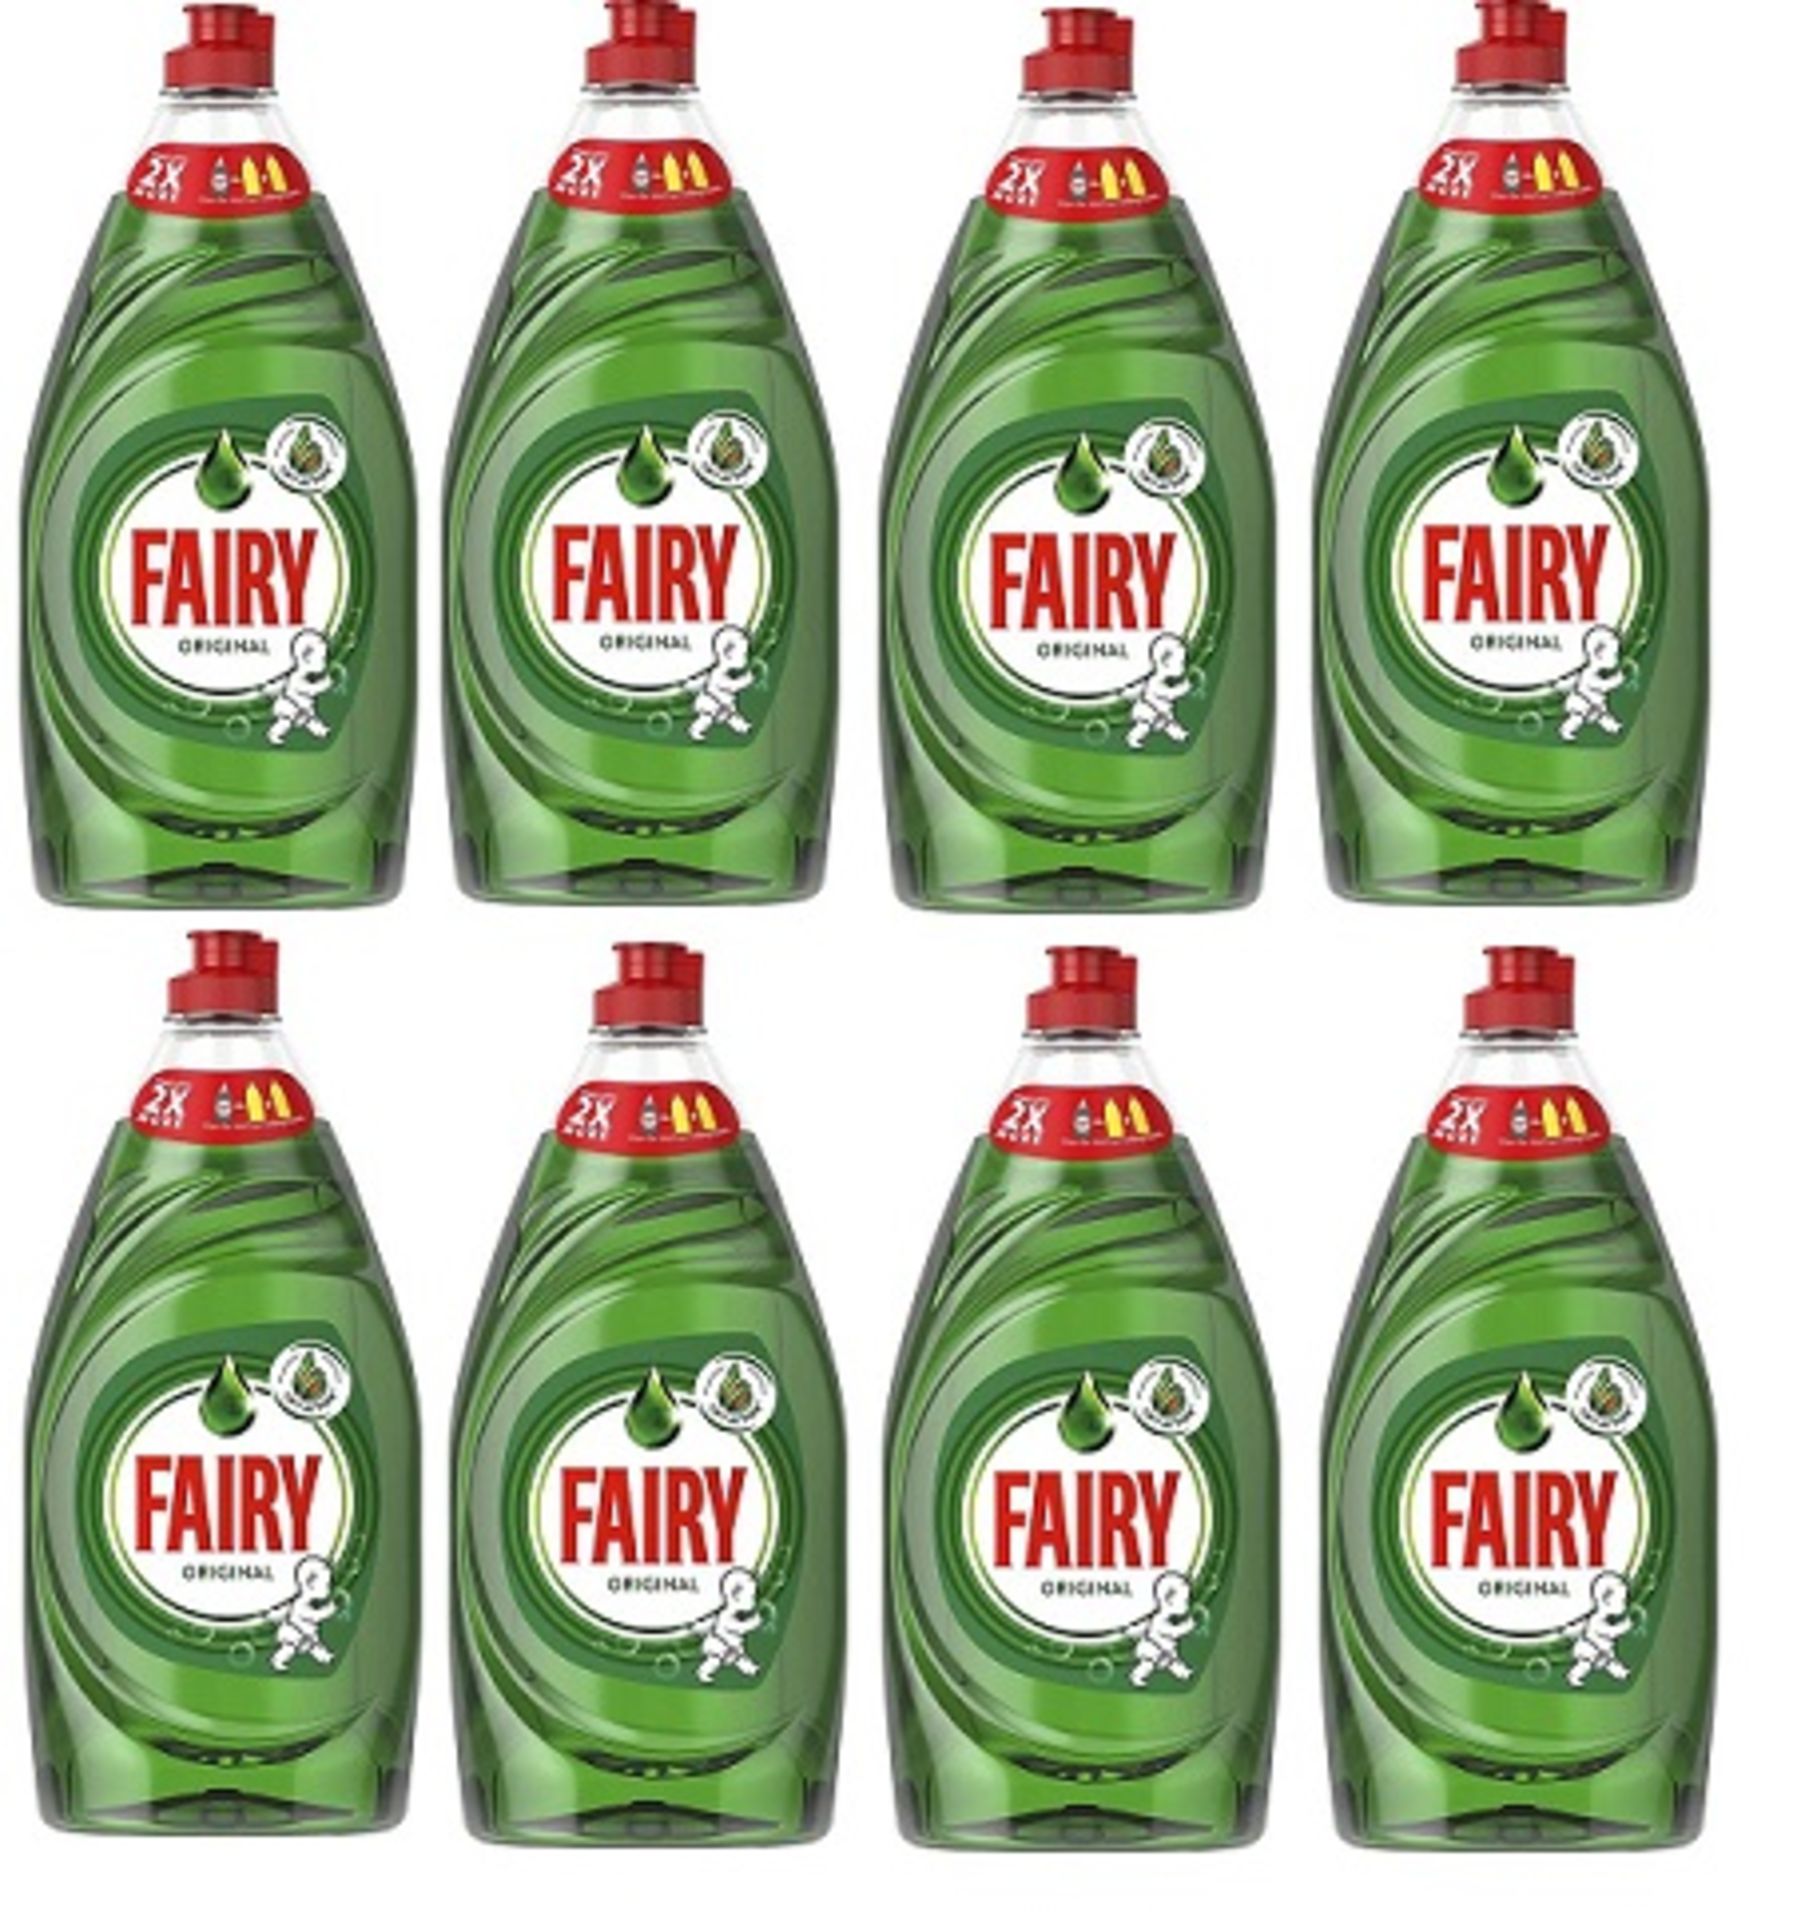 V Brand New Case Of Eight Bottles 780ml Fairy Original